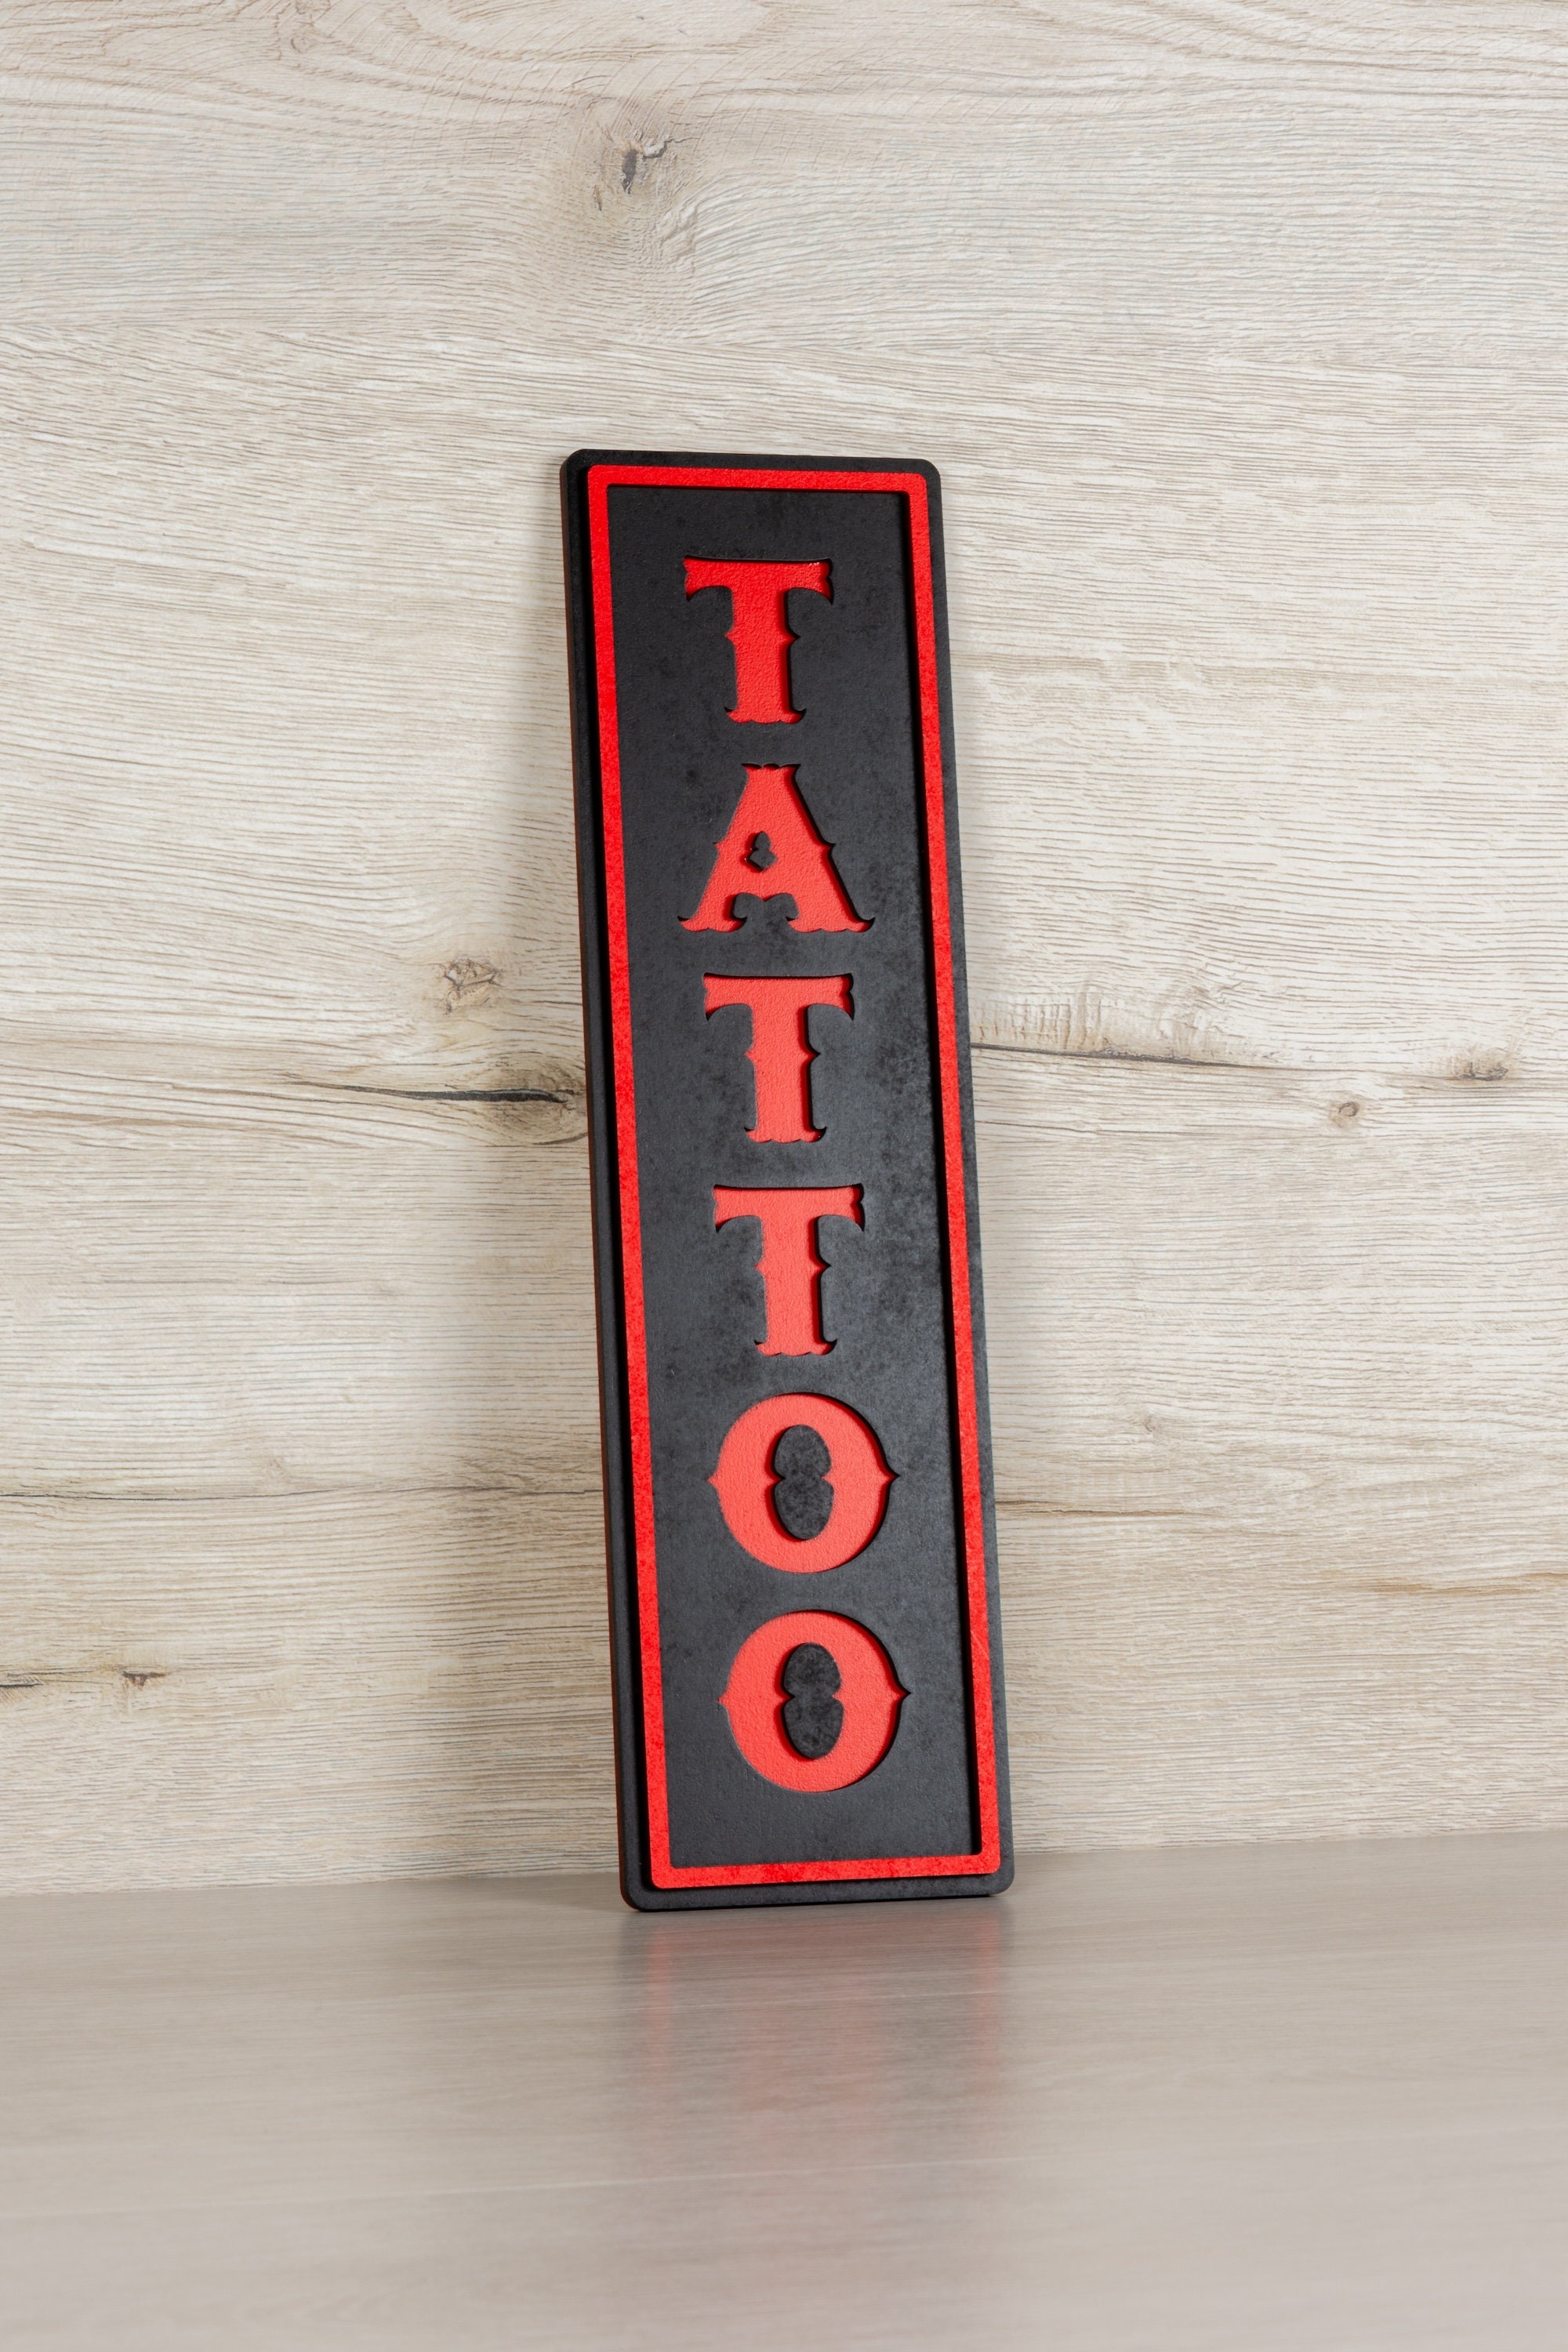 Tattoo Light 3D Lamp, Tattooing Gift, Tattoo Artist Gifts, Tattoo Gifts  Ideas, Gift for Tattoo Artist Boyfriend, Personalized Night Light 